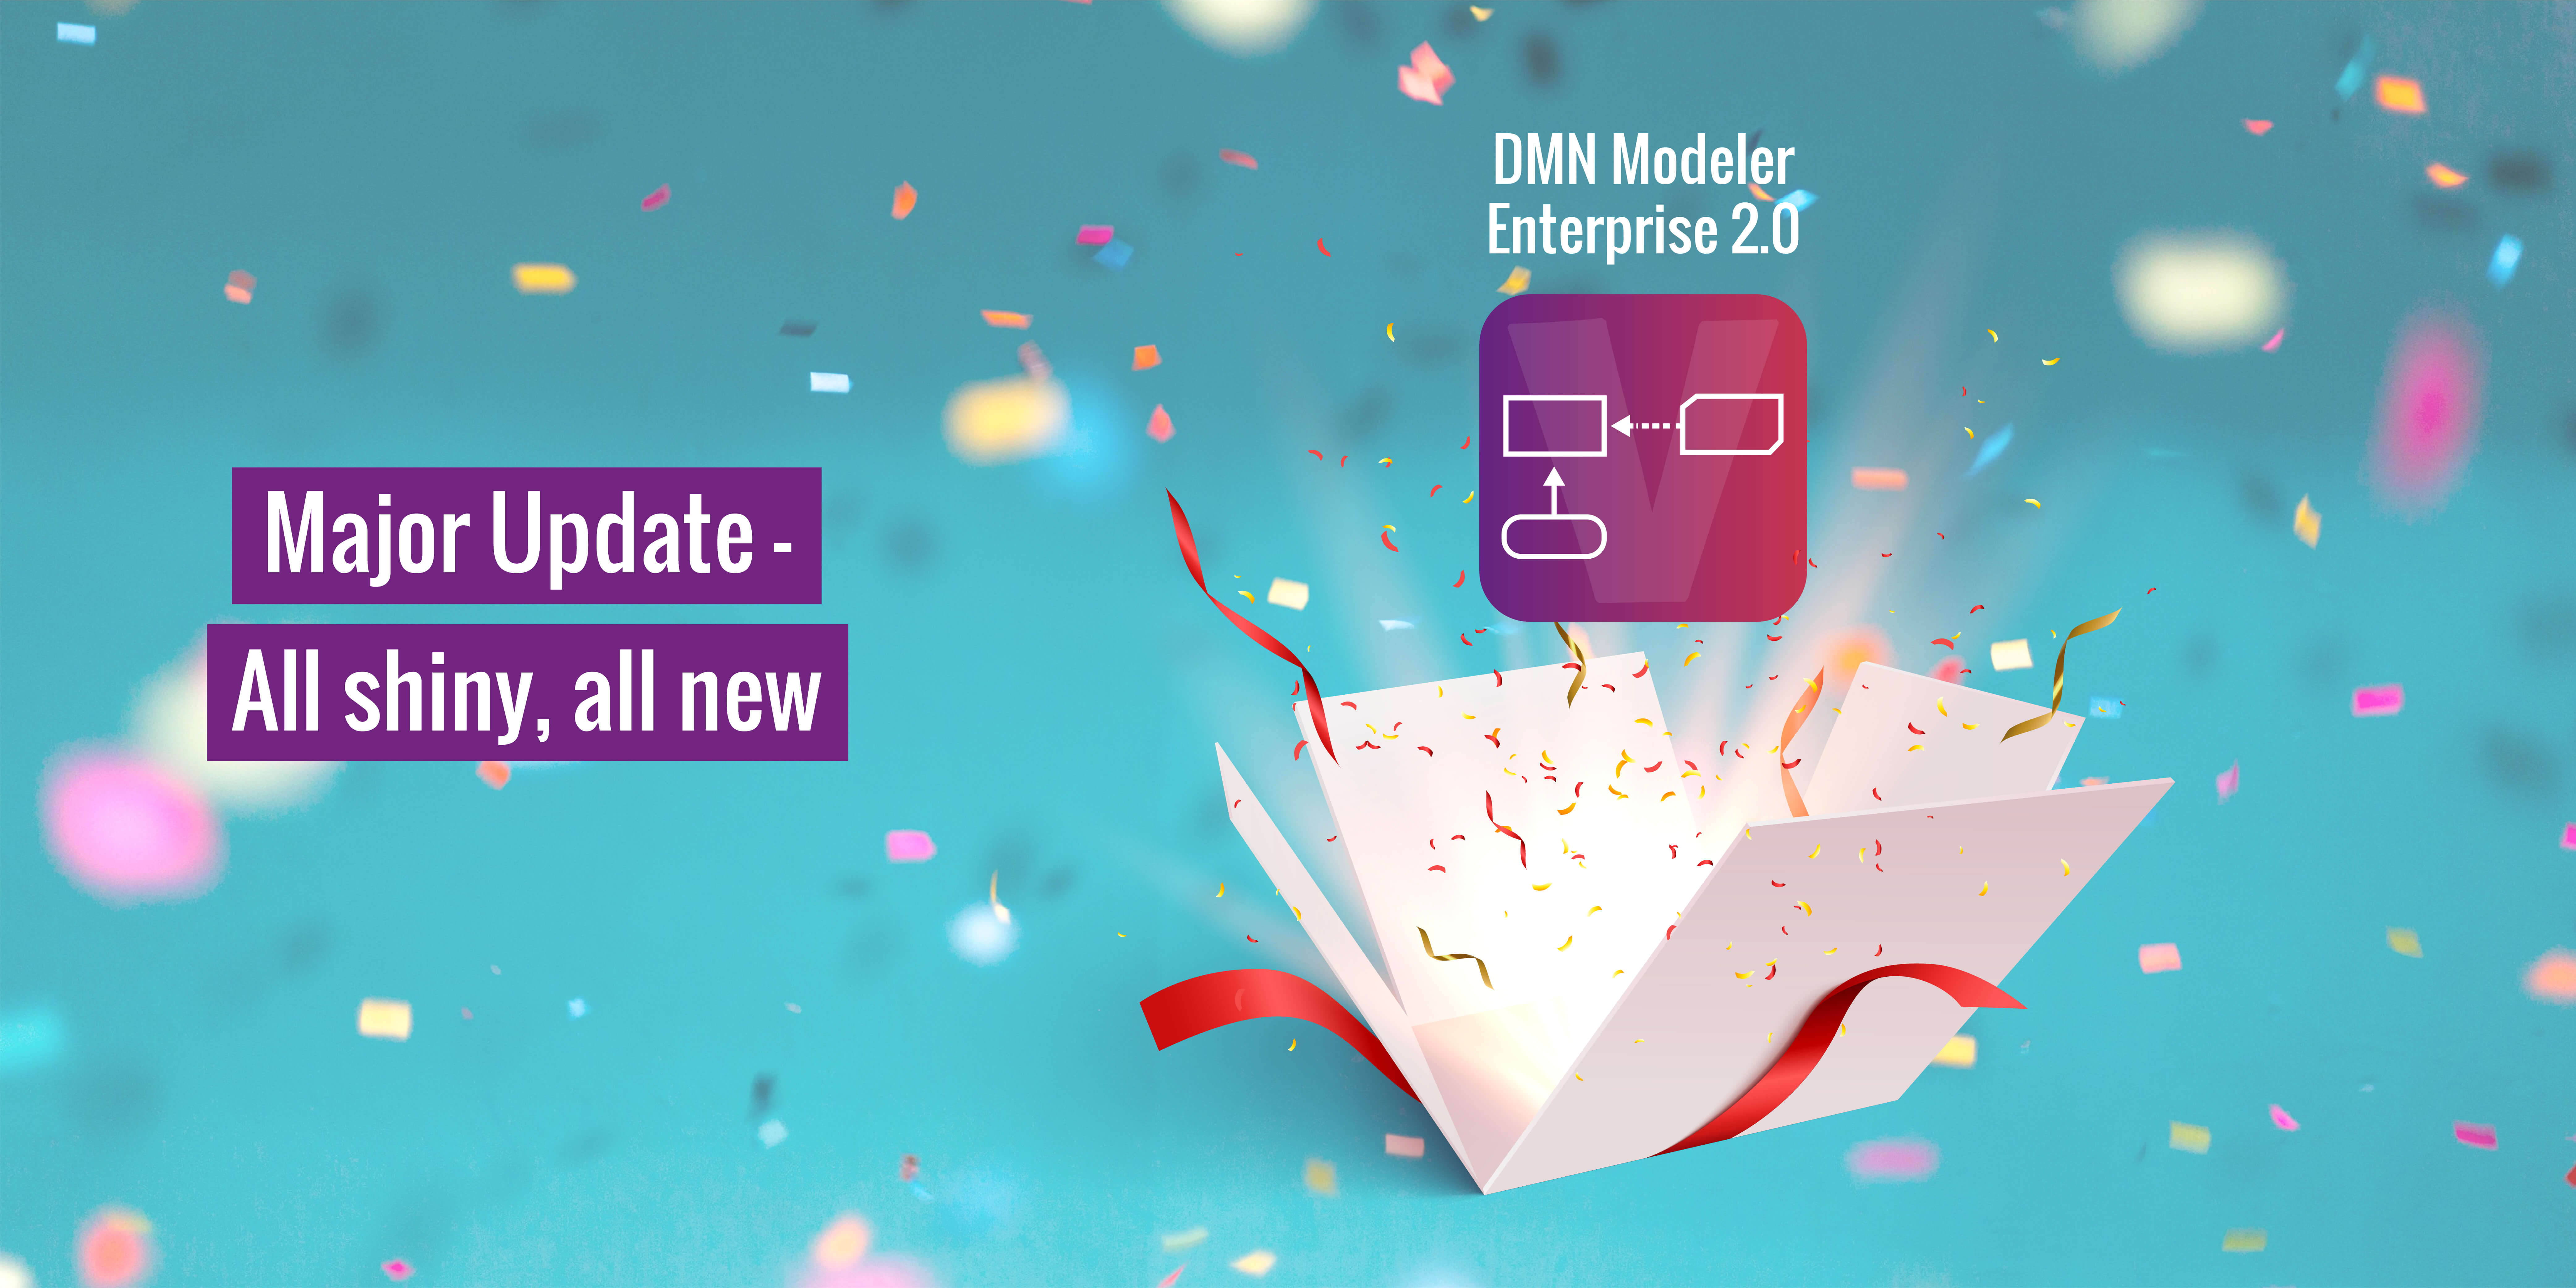 DMN Modeler Enterprise 2.0